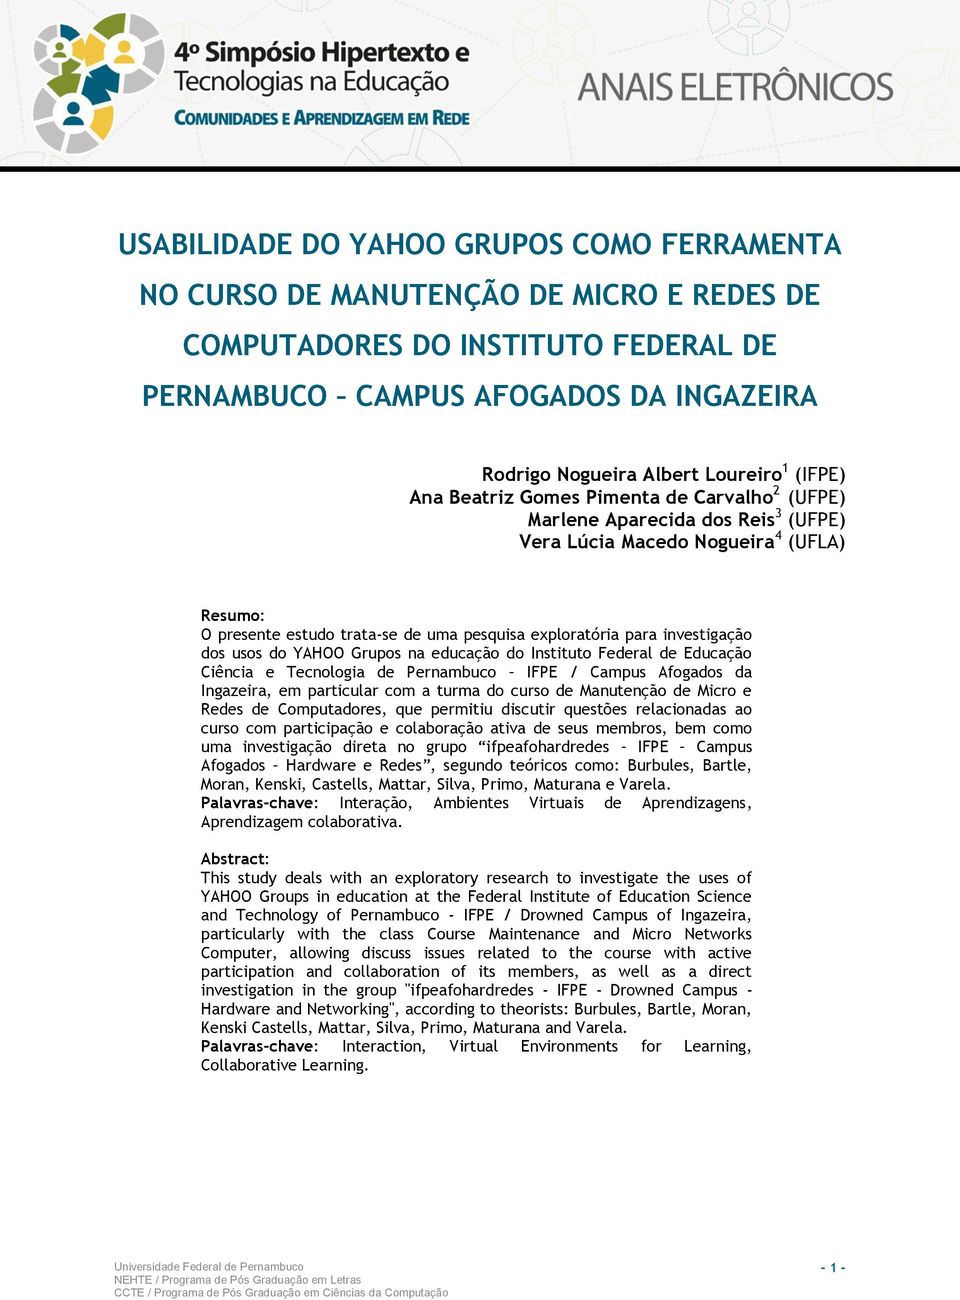 investigação dos usos do YAHOO Grupos na educação do Instituto Federal de Educação Ciência e Tecnologia de Pernambuco IFPE / Campus Afogados da Ingazeira, em particular com a turma do curso de